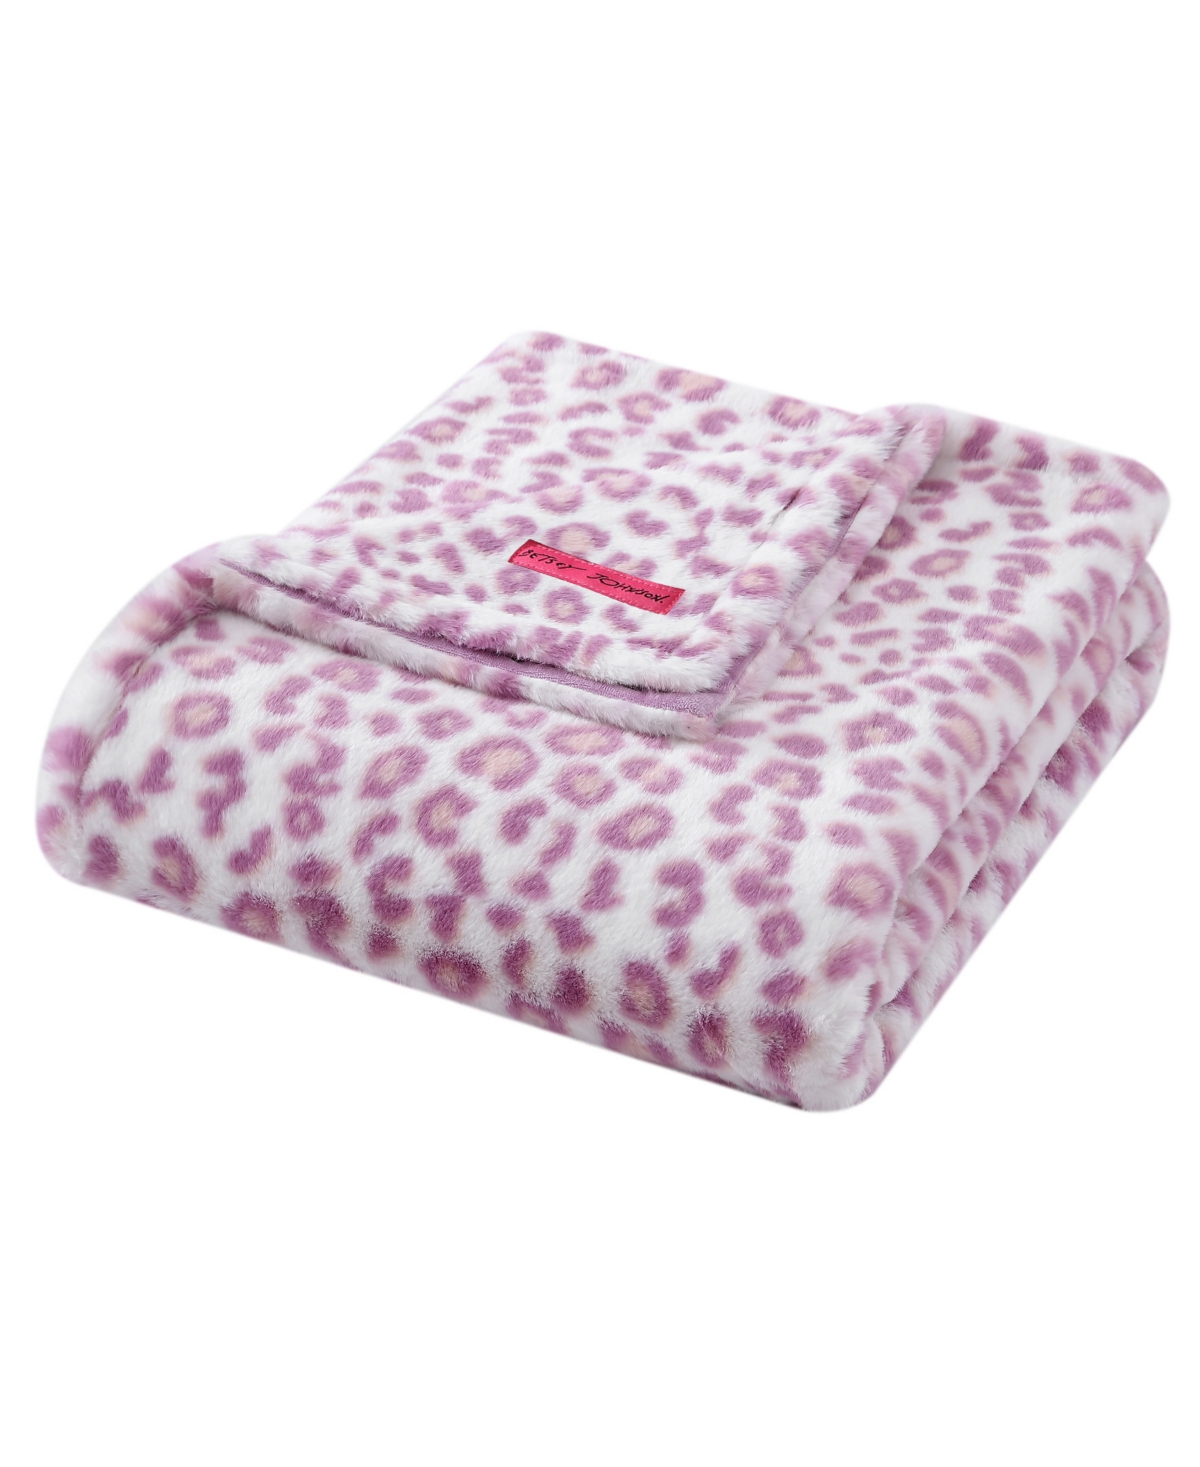 Betsey Johnson Betseys Faux Fur Throw Blanket, 60"x 50" In Leopard